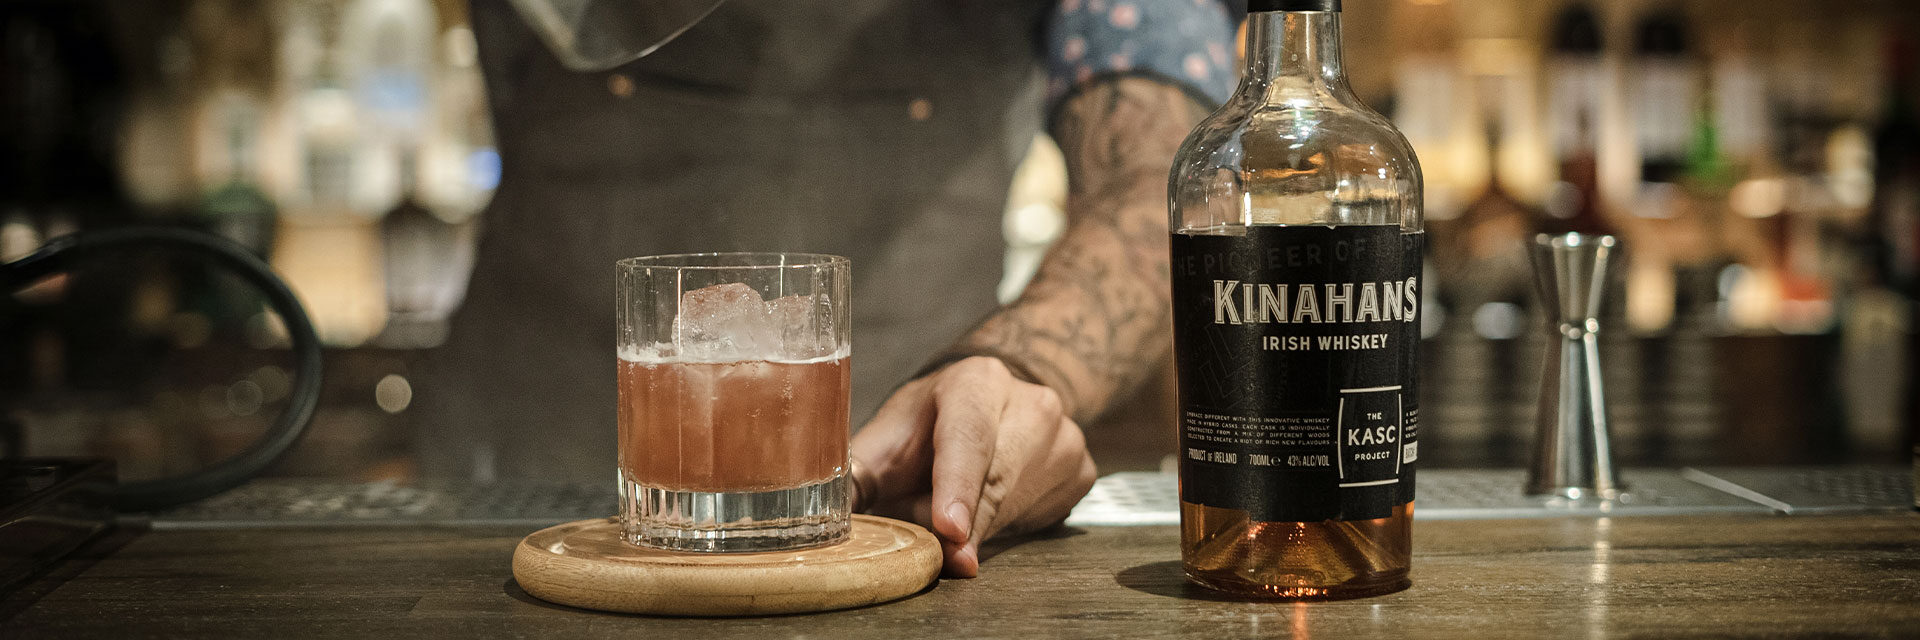 Kinahan's Whiskey - The Original Pioneer of Irish Whiskey